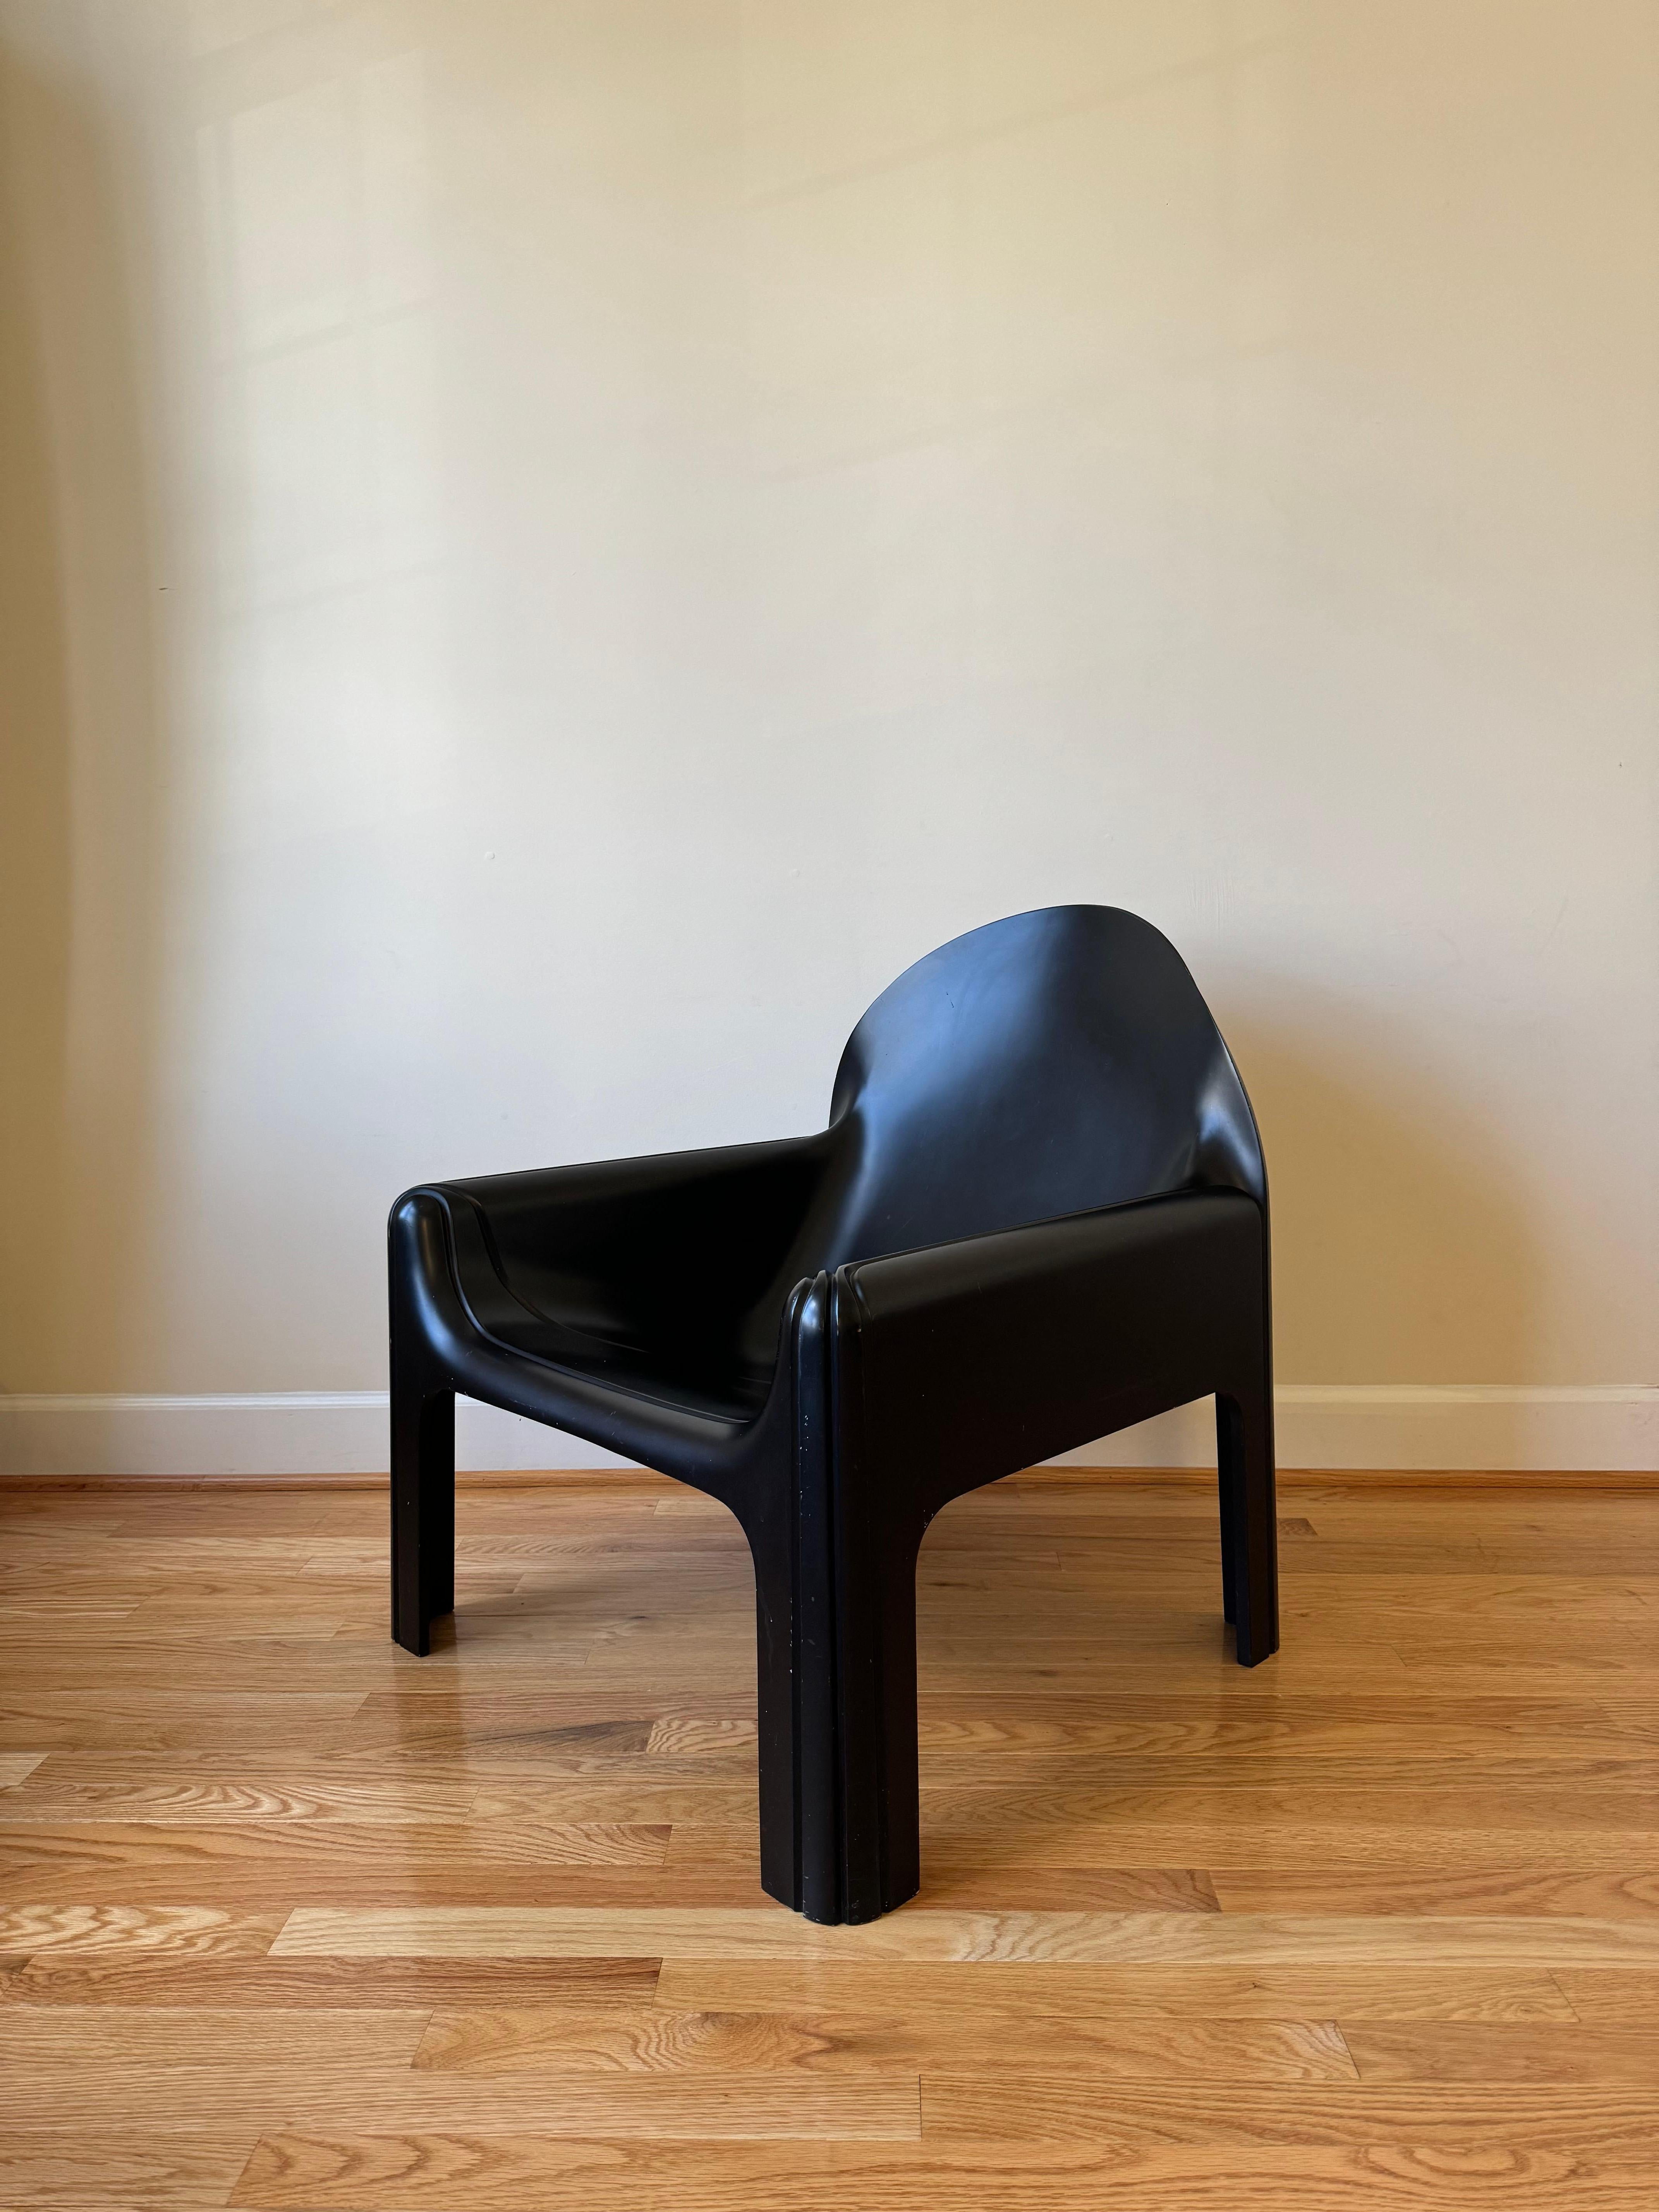 Die ikonische Serie Gae Aulenti Kartell, die erstmals 1974 vorgestellt wurde, markiert einen bedeutenden Meilenstein in der Geschichte des Möbeldesigns. Die Serie, bestehend aus einem Tisch (Modell 4894), einem Sessel (Modell 4794) und einem